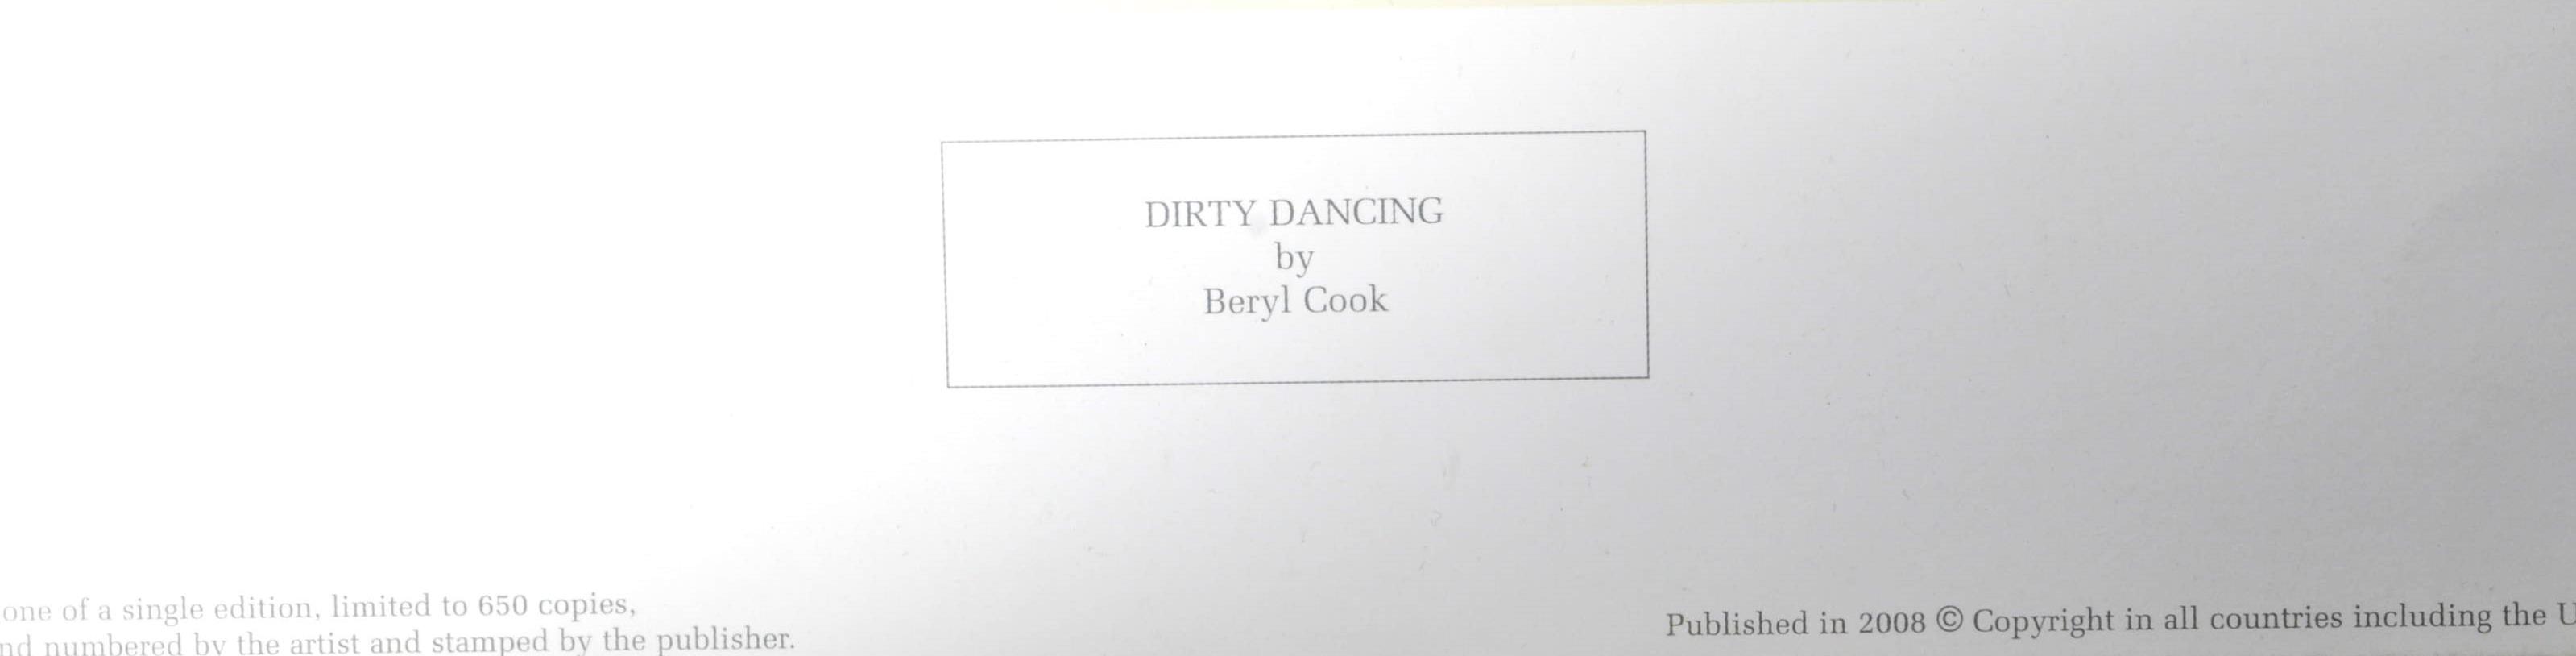 BERYL COOK - DIRTY DANCING - SIGNED PRINT - Image 6 of 6